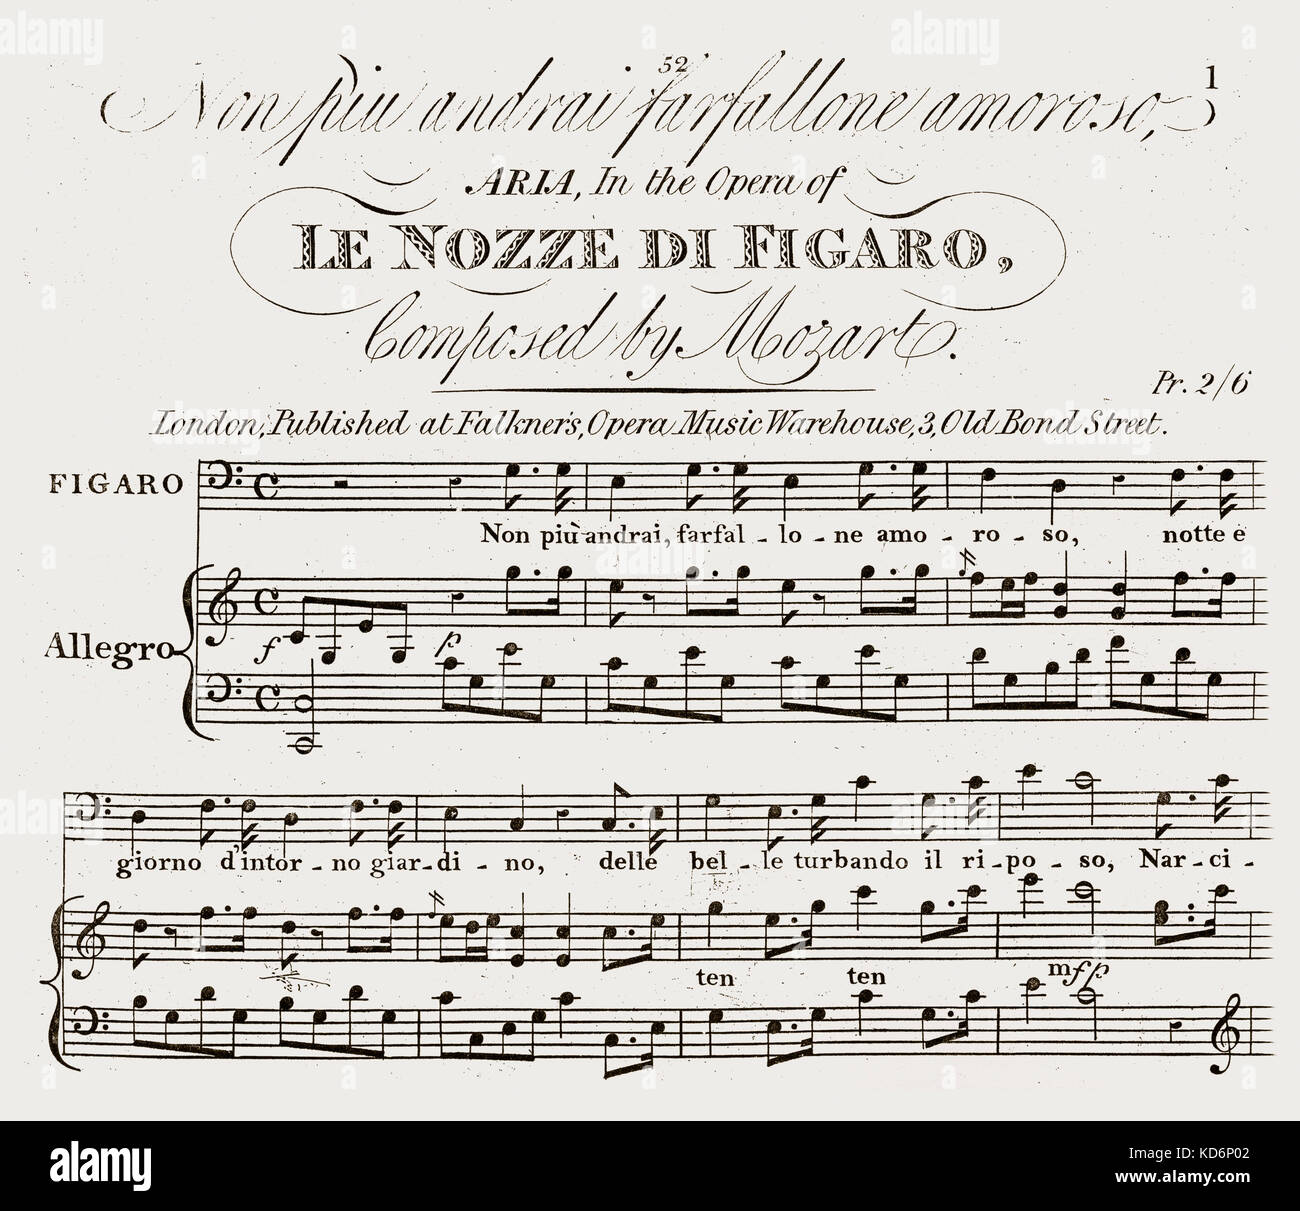 Ноты арии моцарт